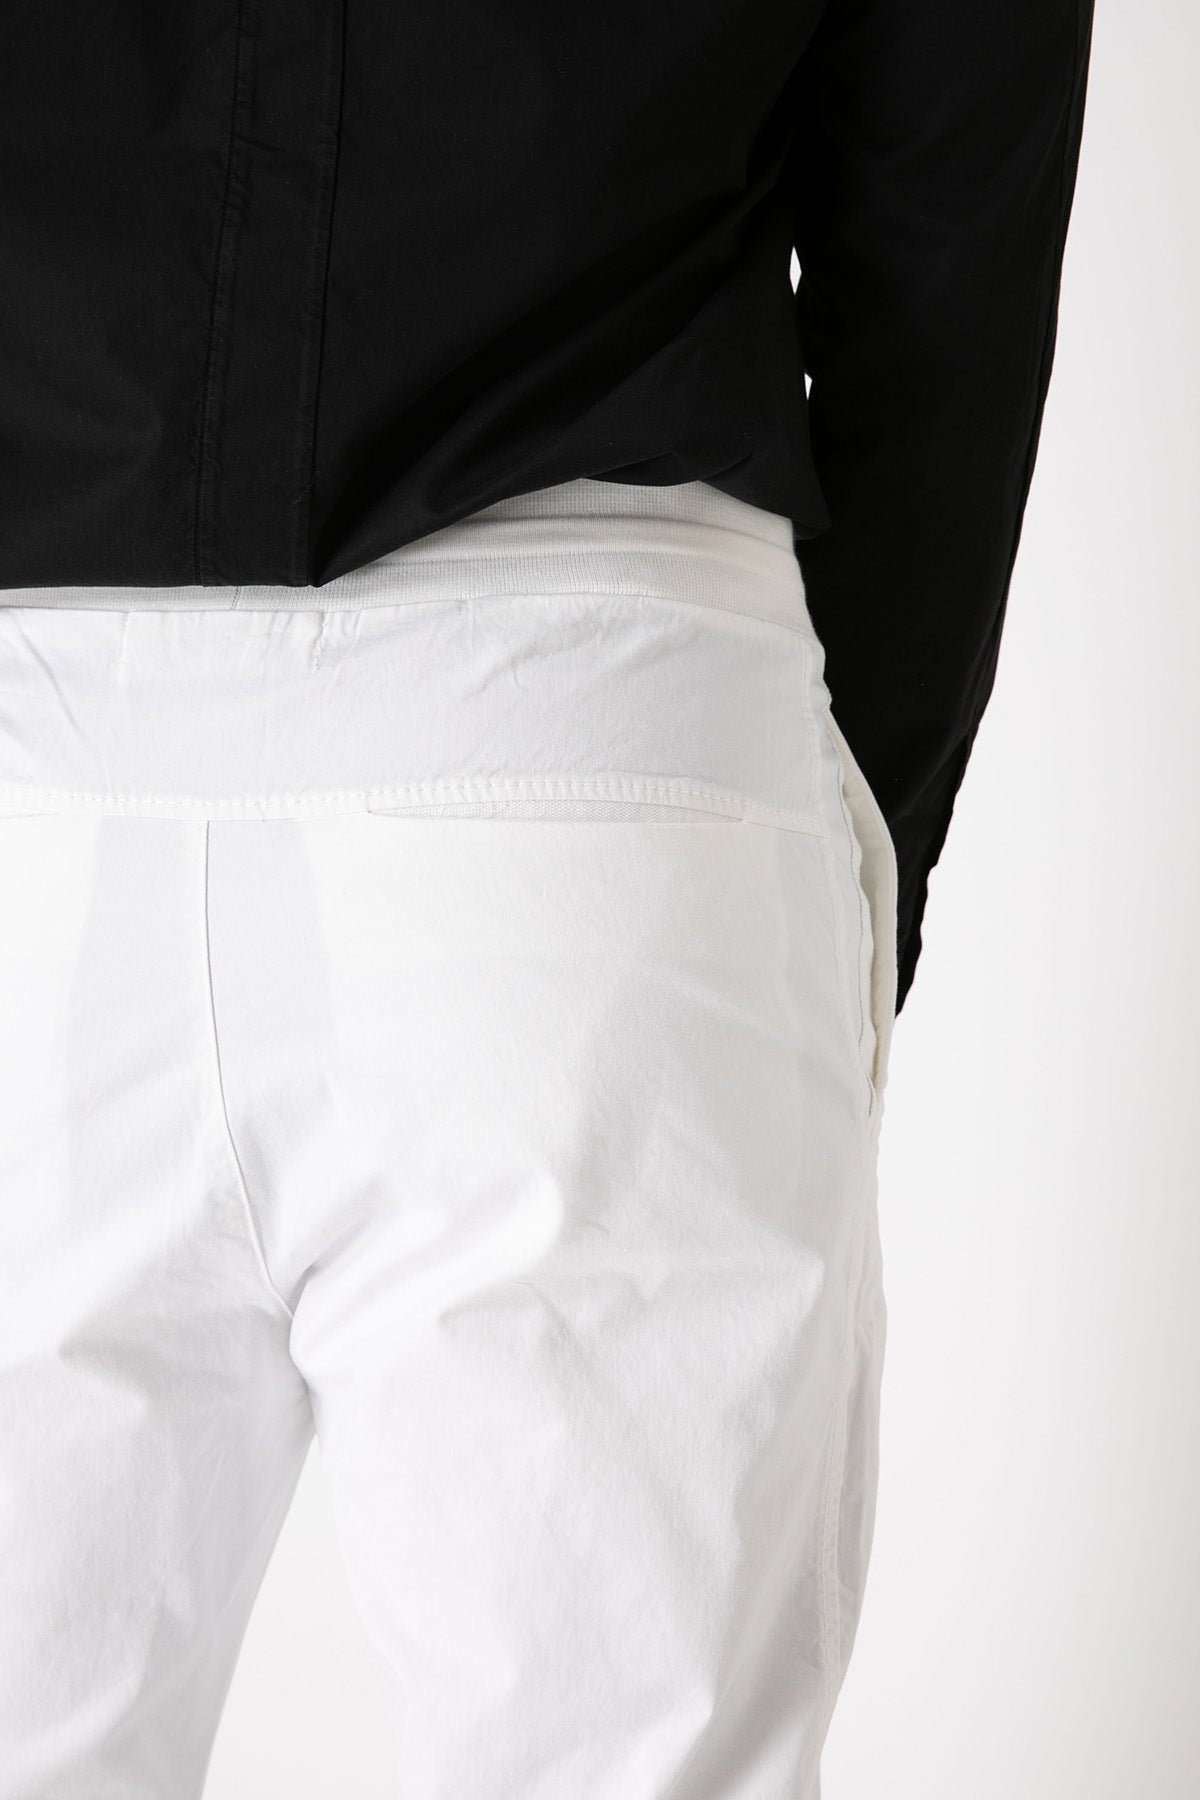 Transit Beli Lastikli Jogger Pantolon-Libas Trendy Fashion Store